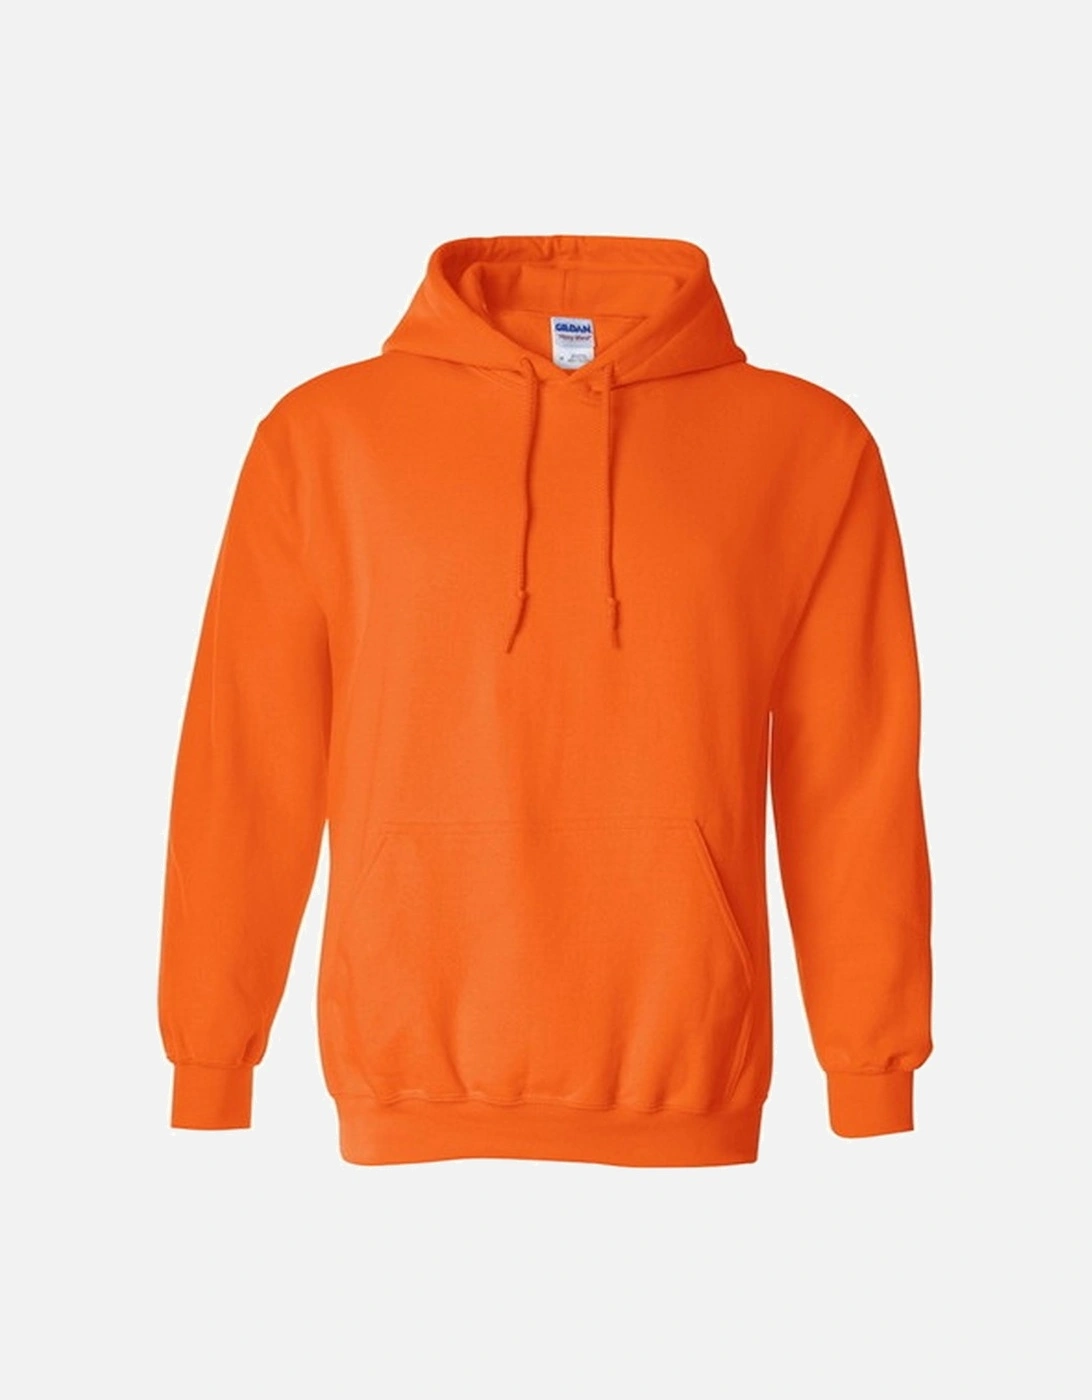 Heavy Blend Adult Unisex Hooded Sweatshirt / Hoodie, 4 of 3